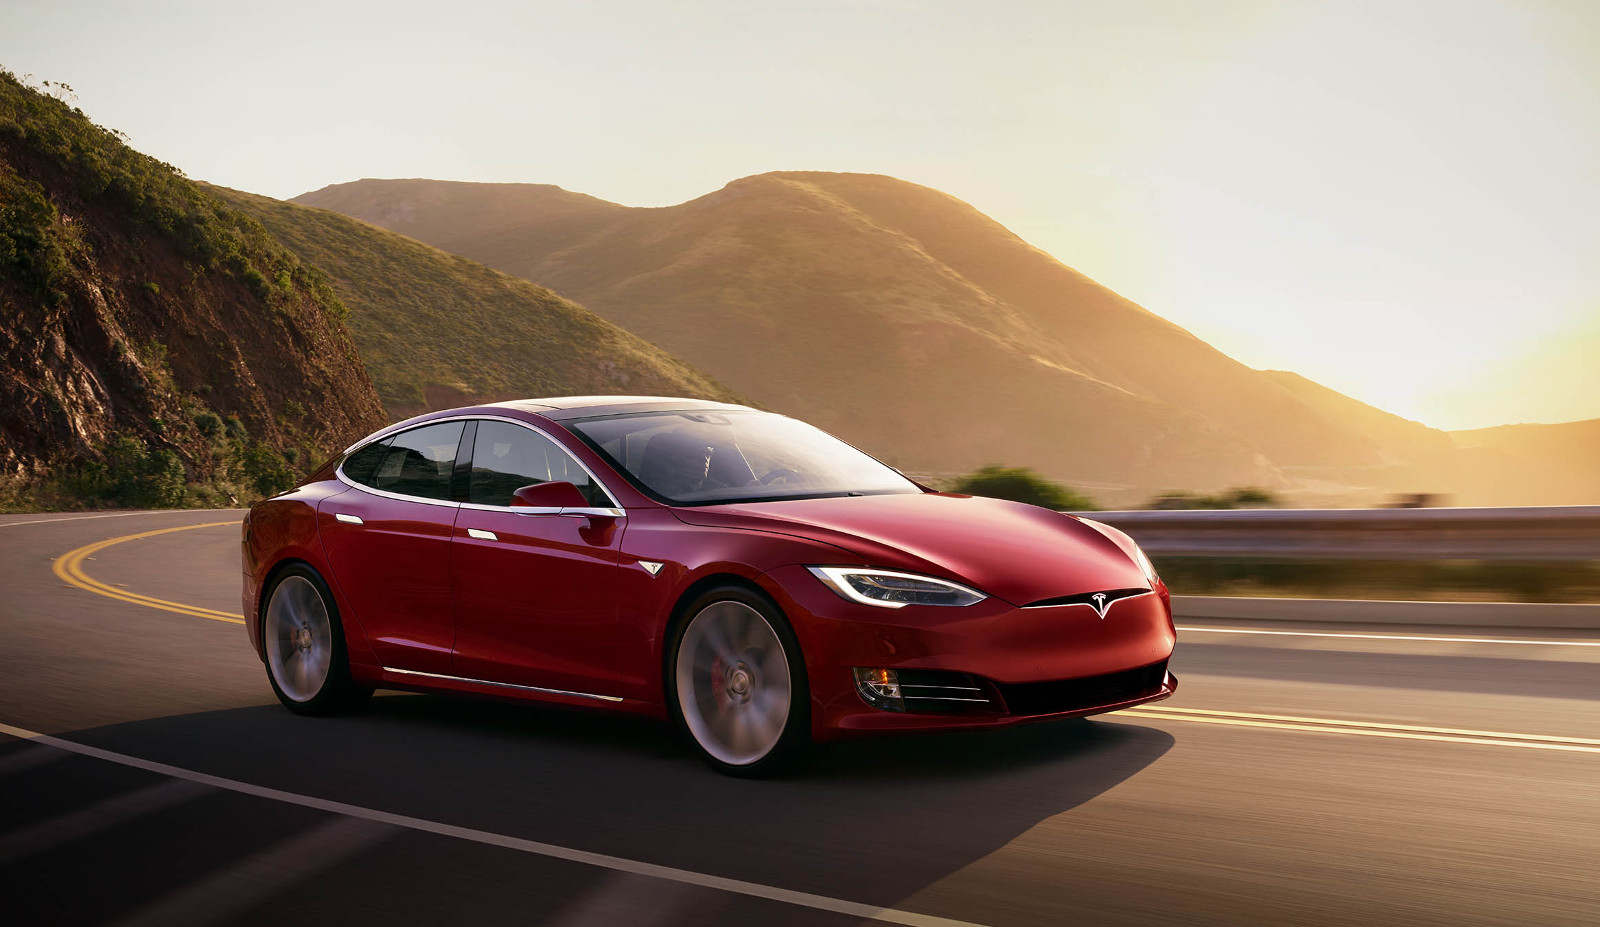 Tesla recalls 2 million cars in U.S. after safety concerns